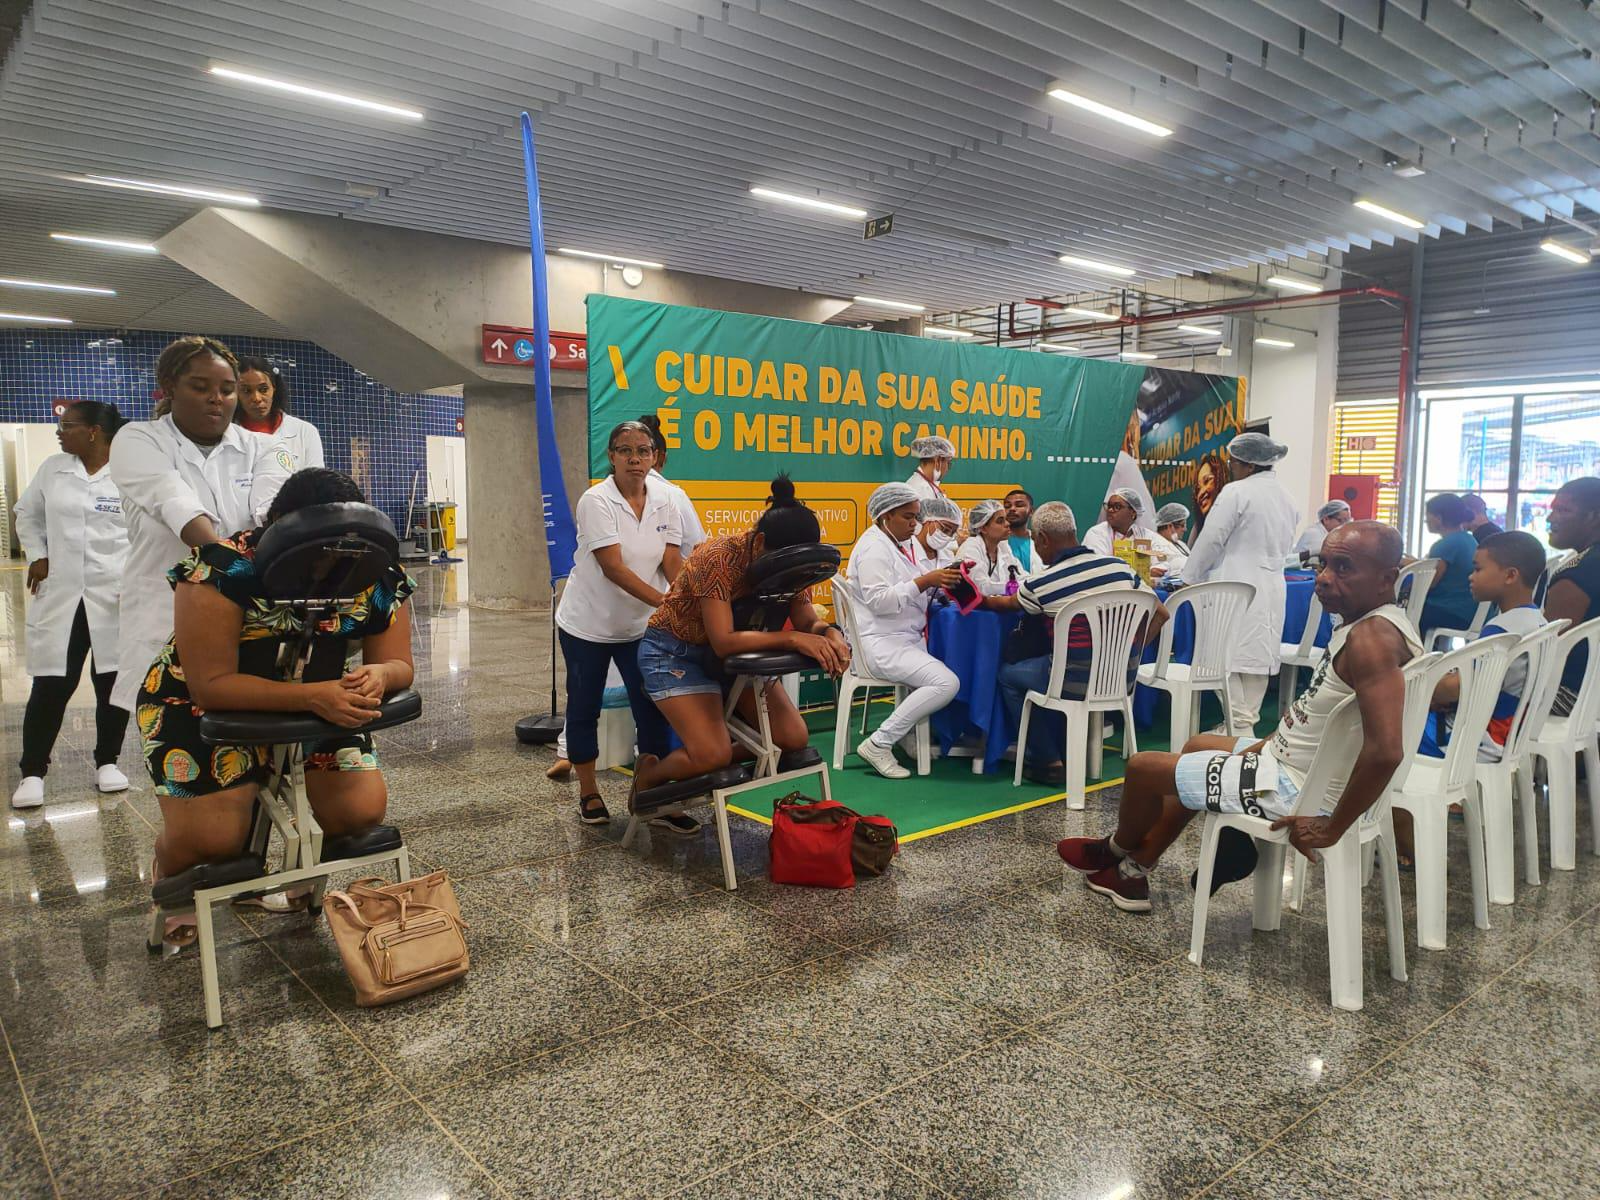 Serviços de saúde gratuitos são oferecidos em estação de metrô de Salvador a partir desta terça-feira